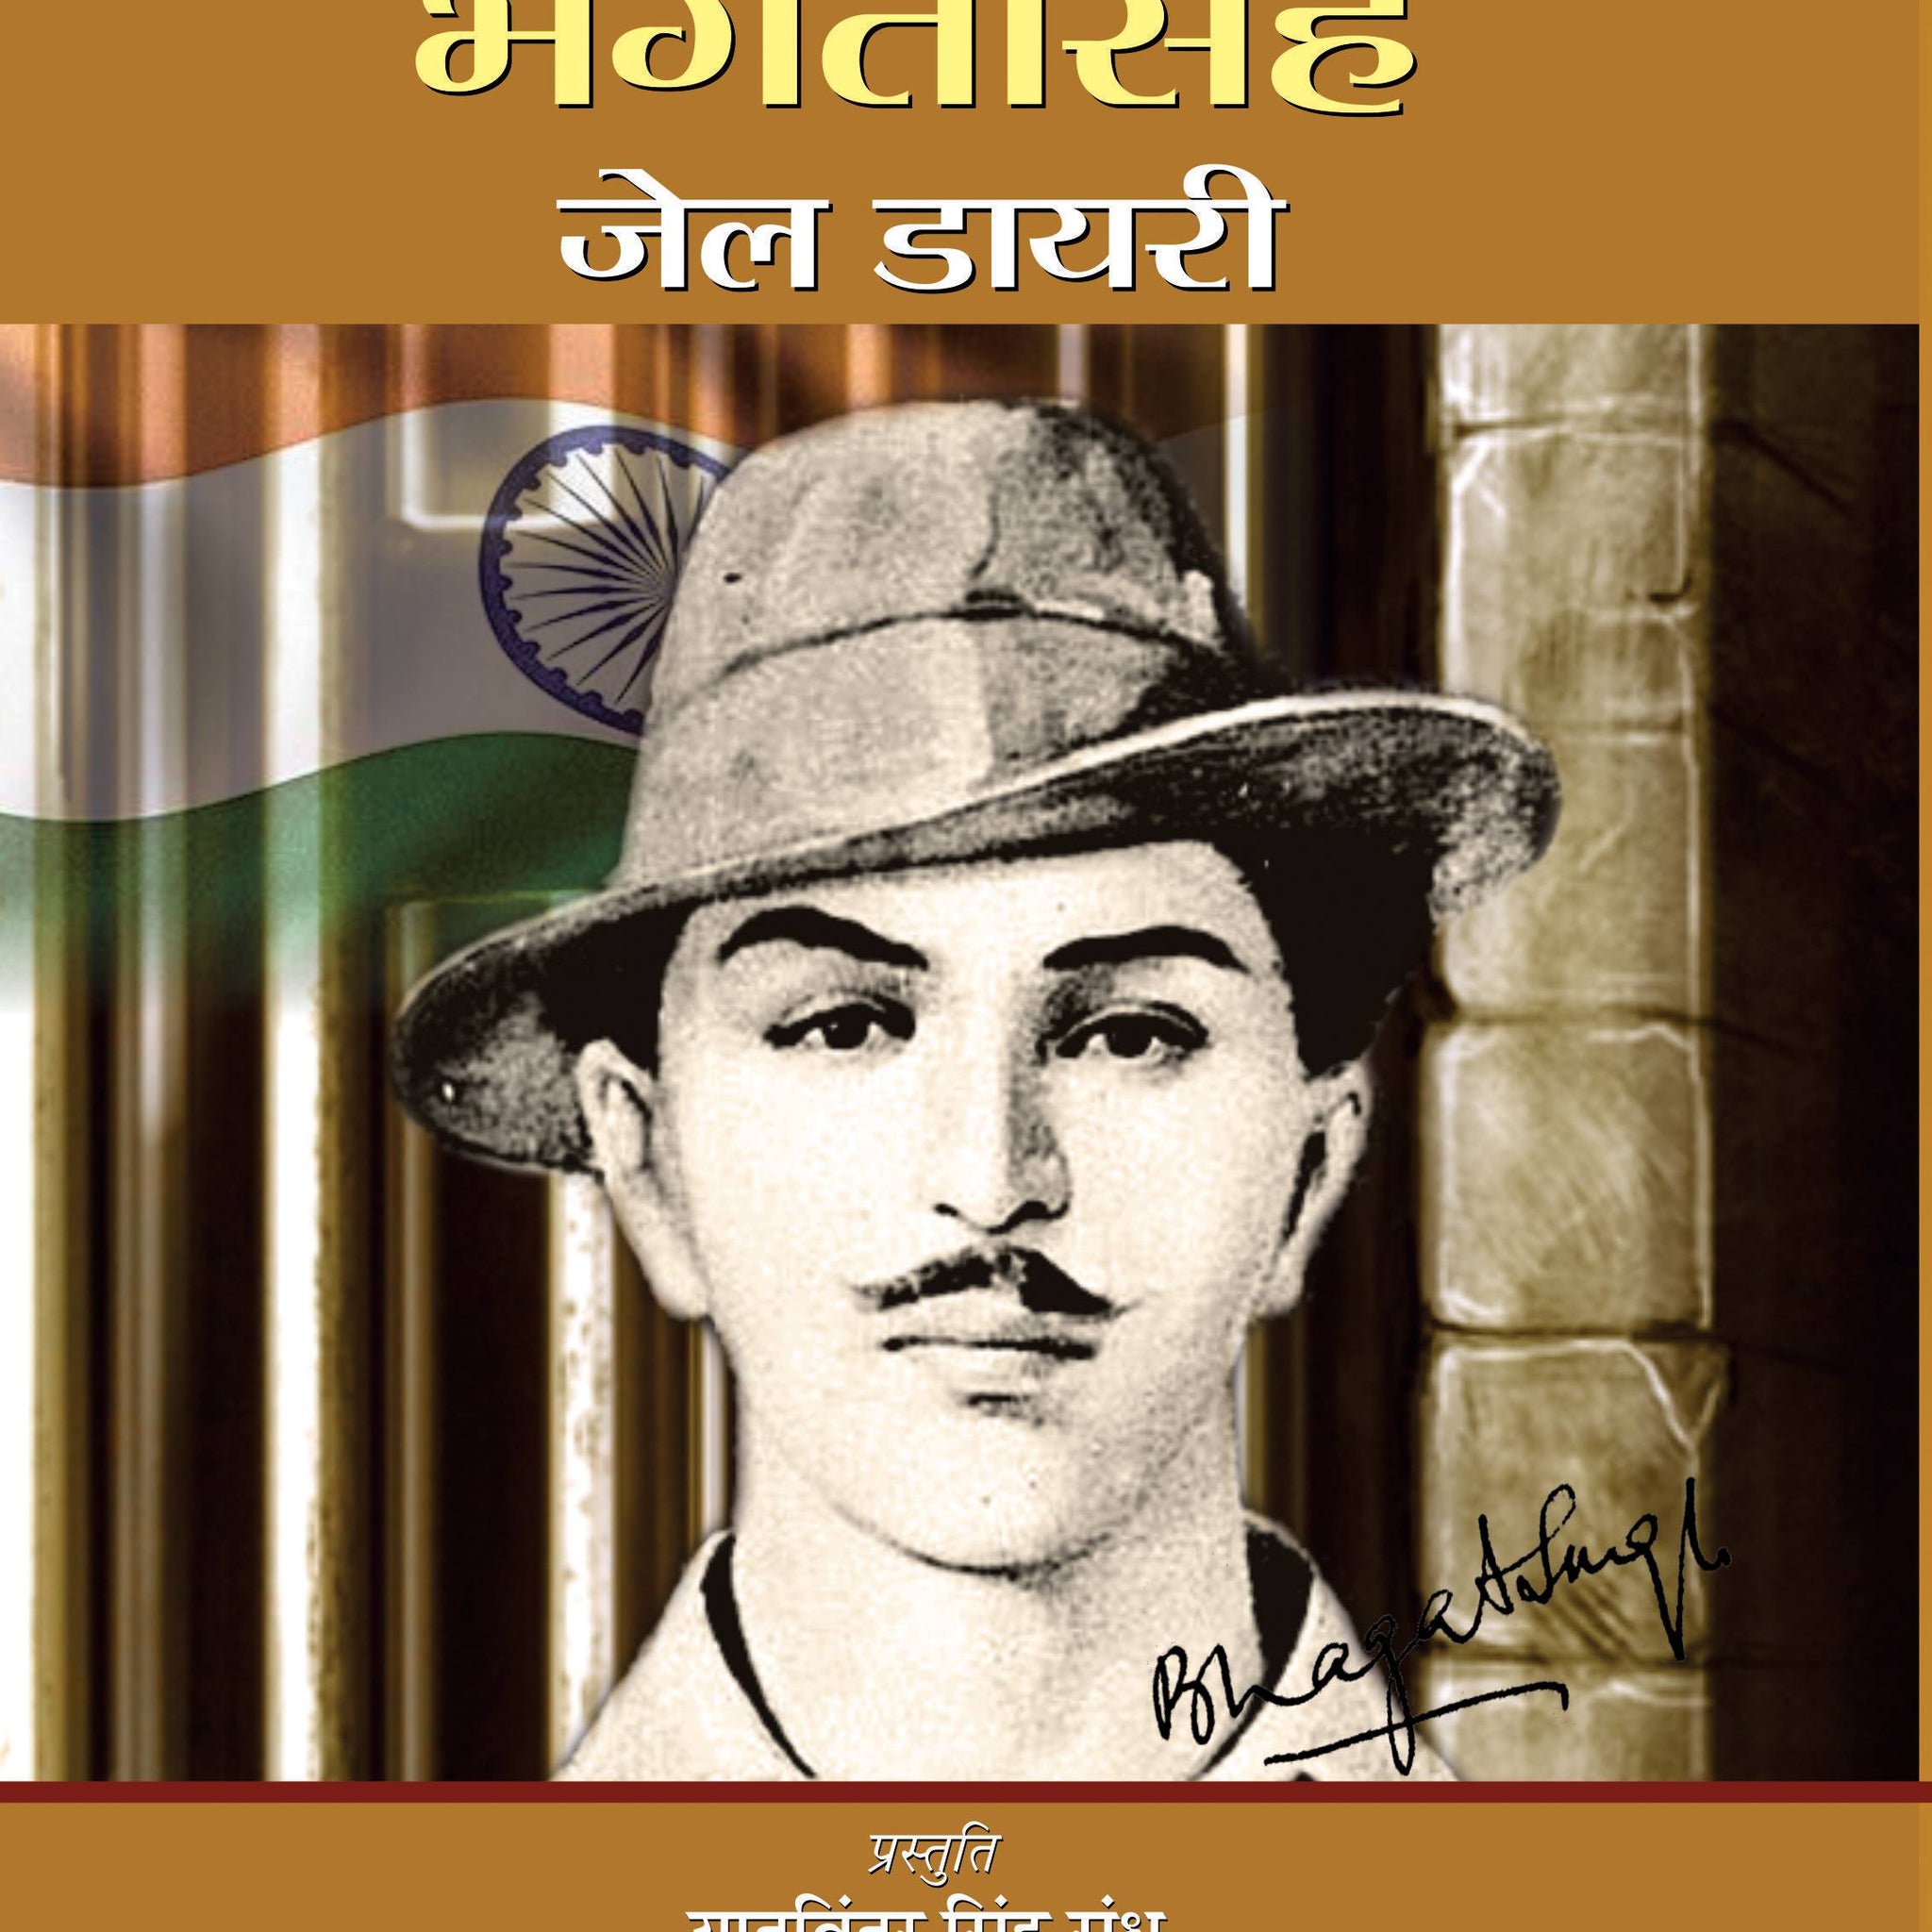 Bhagat Singh Jail Diary